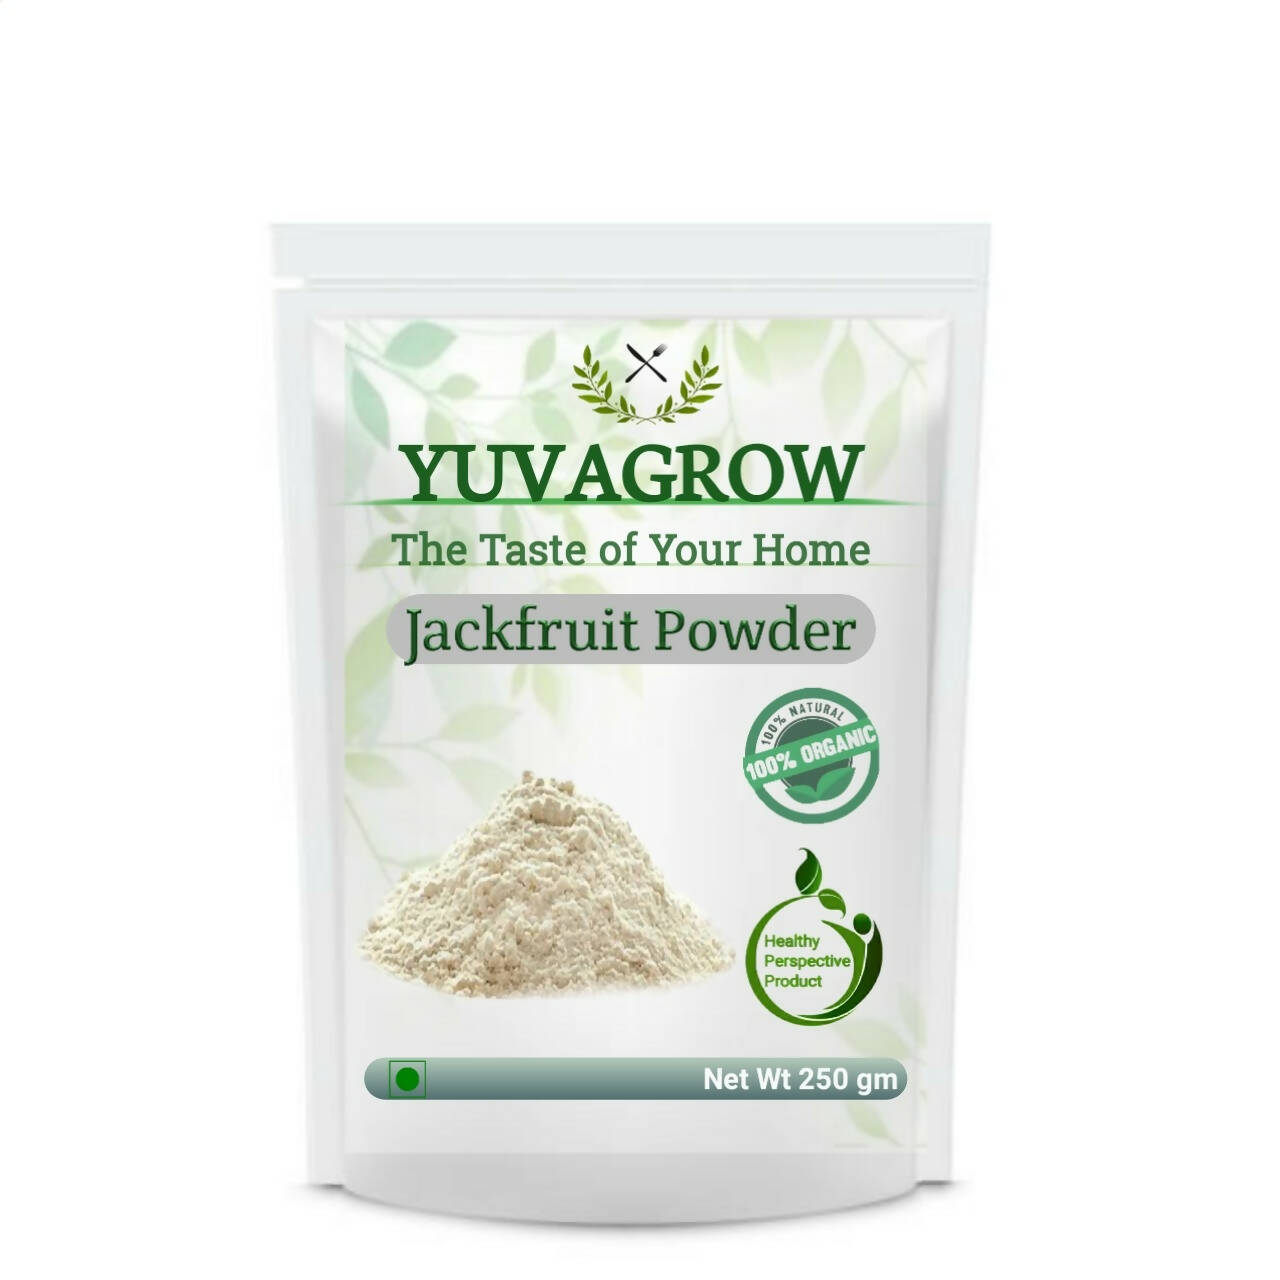 Yuvagrow Jackfruit Powder - buy in USA, Australia, Canada